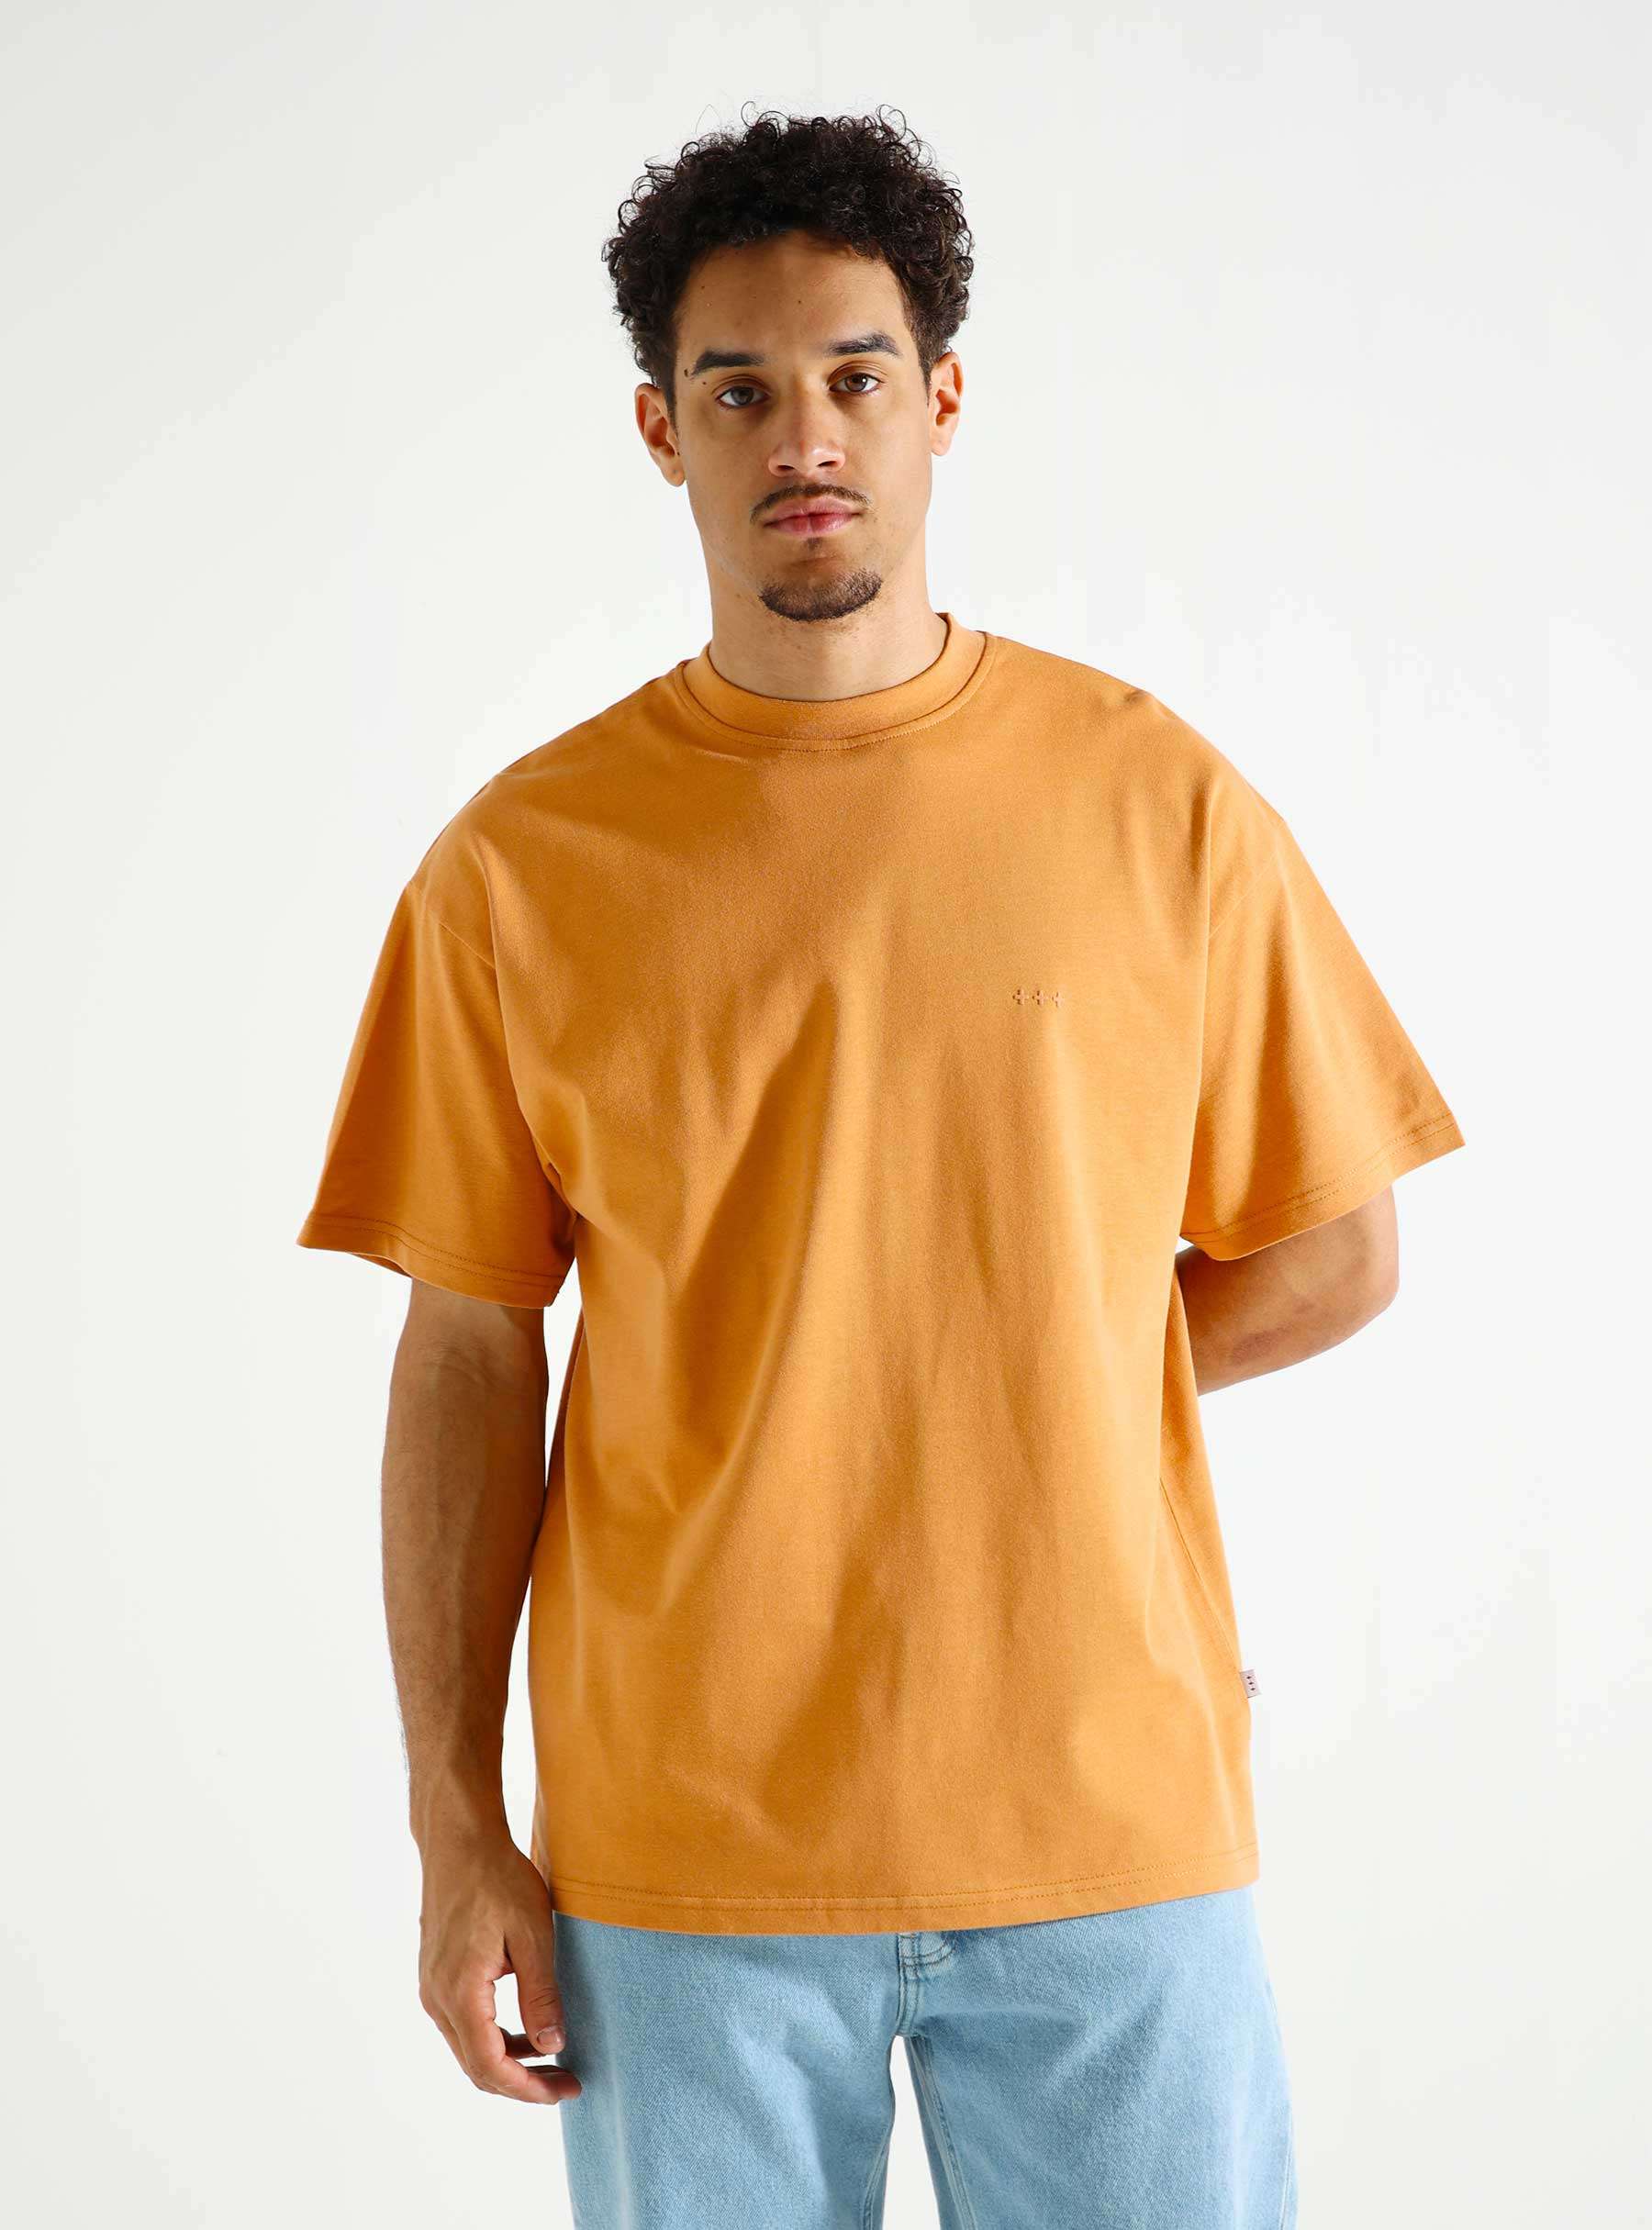 QB304 Loose T-shirt Peach Clay